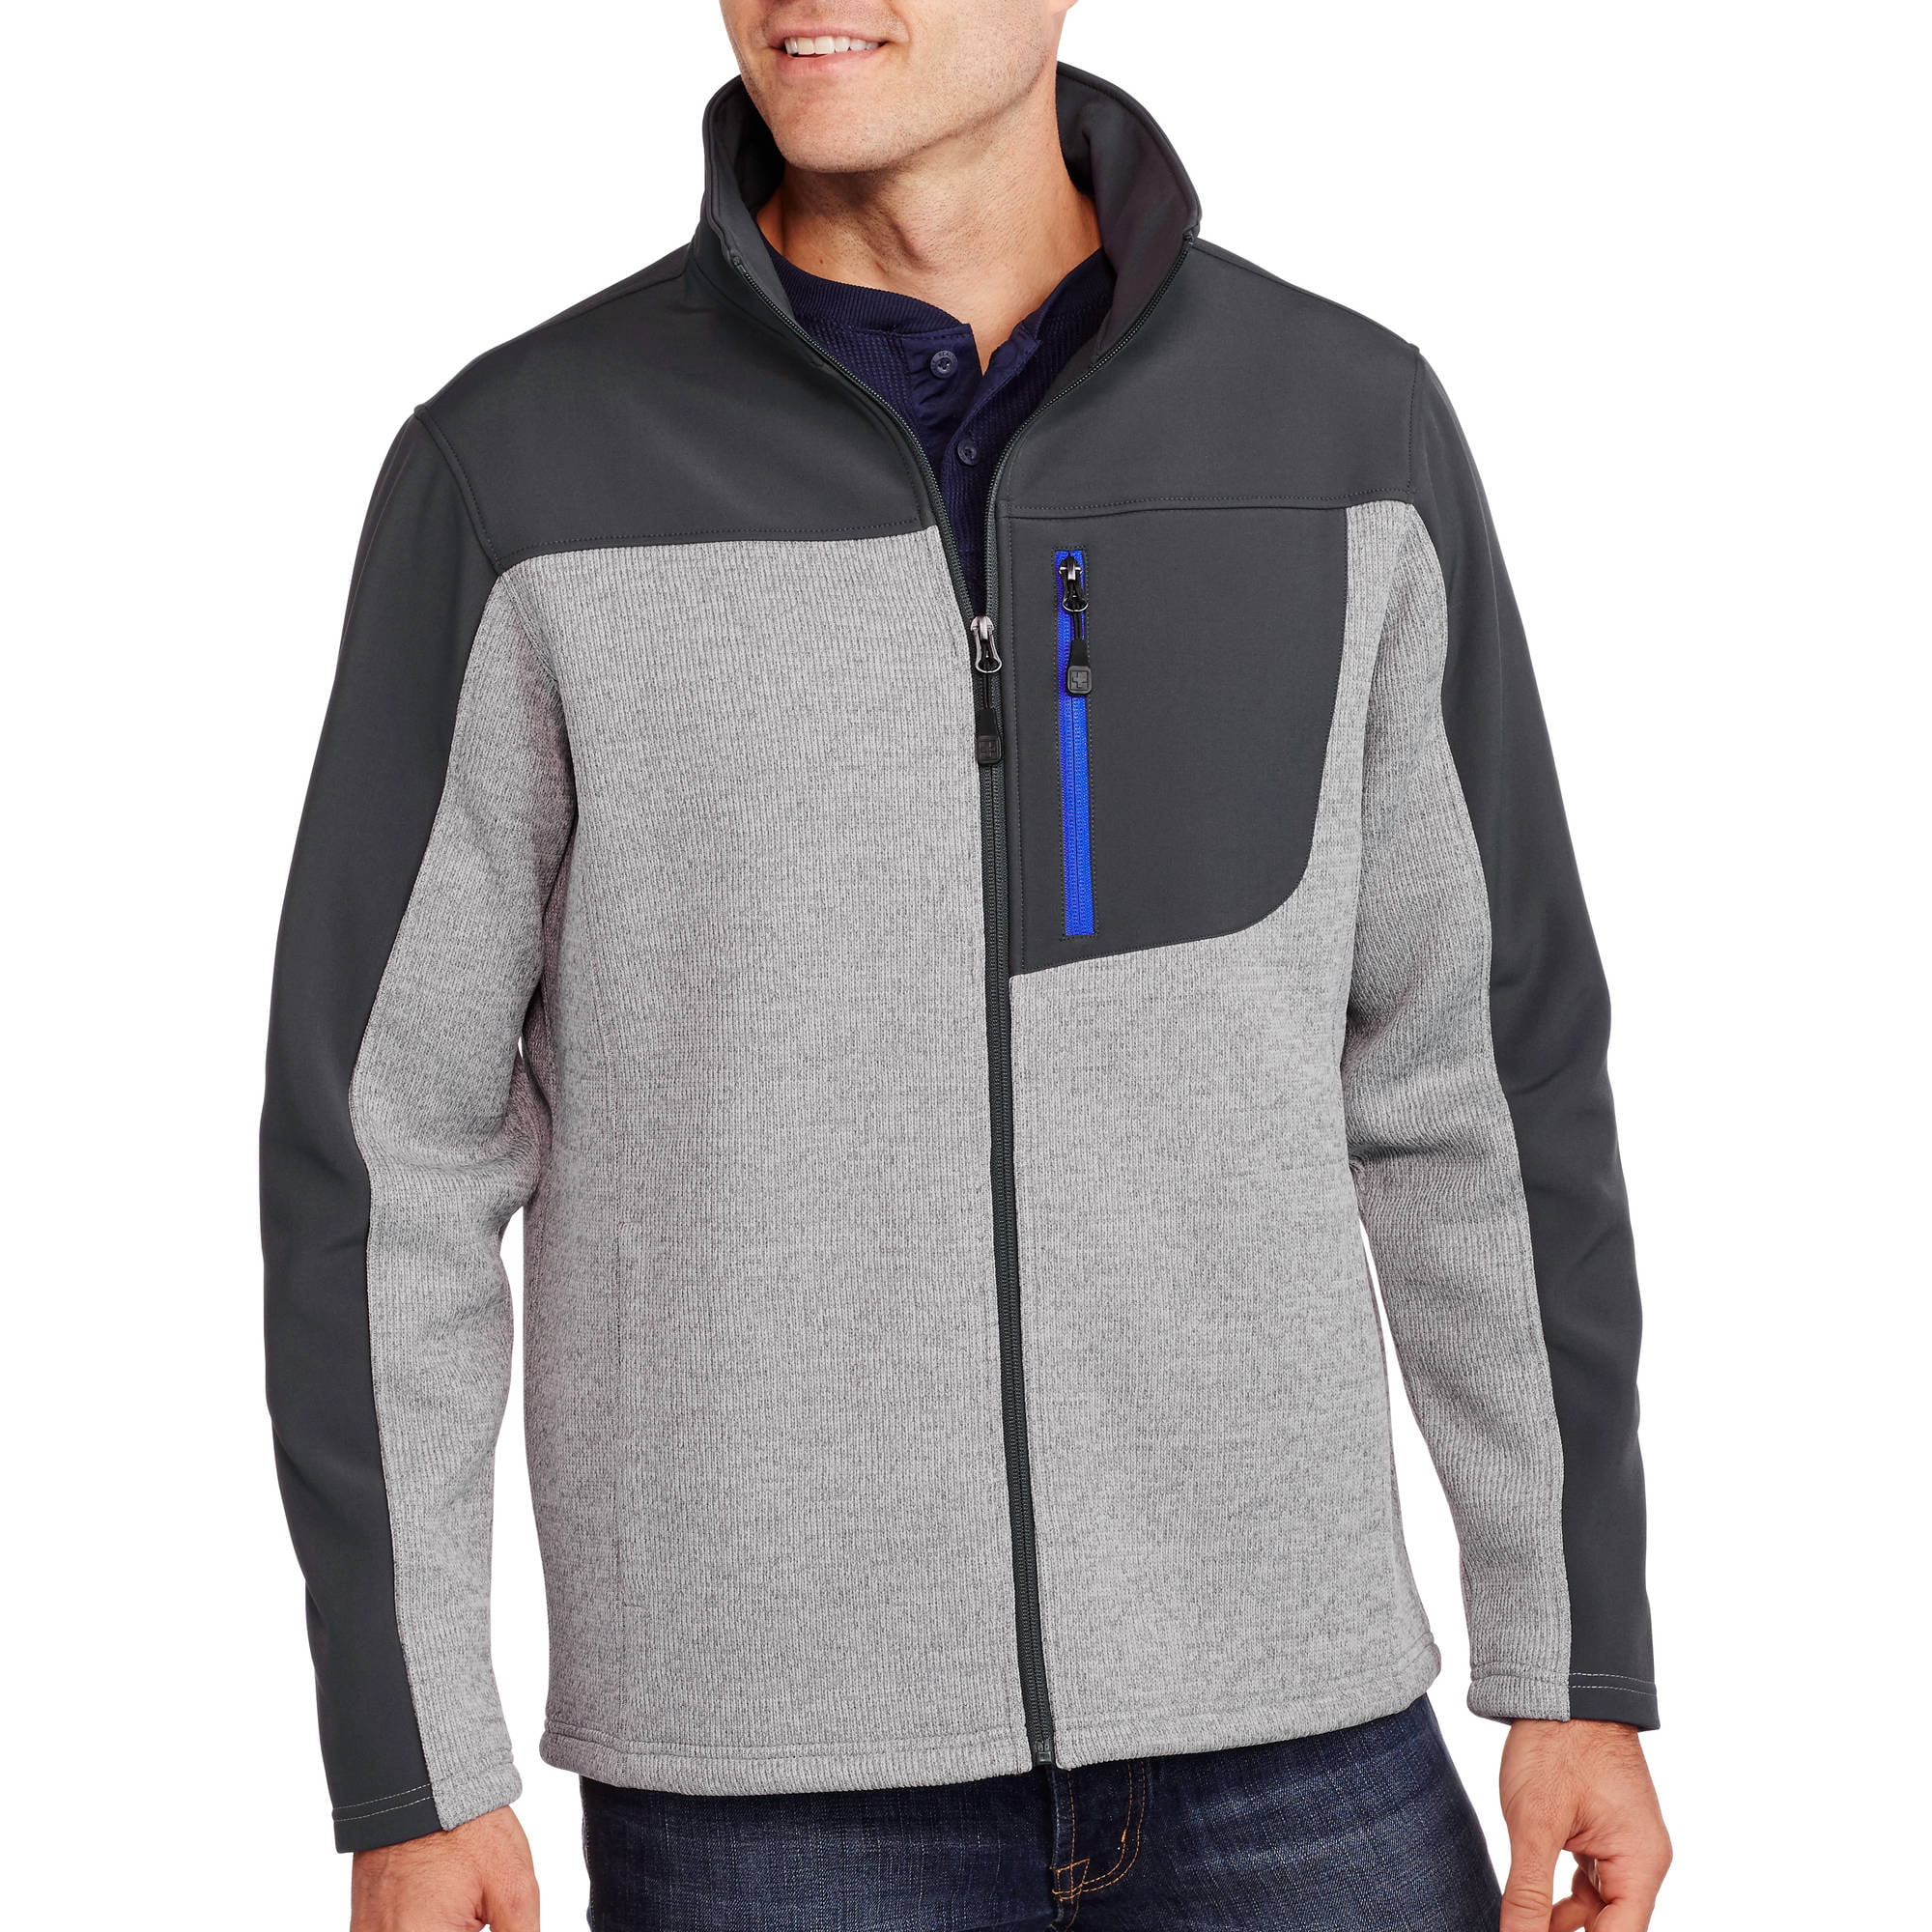 Swiss Tech Mens Fleece Sweater – Walmart Inventory Checker – BrickSeek